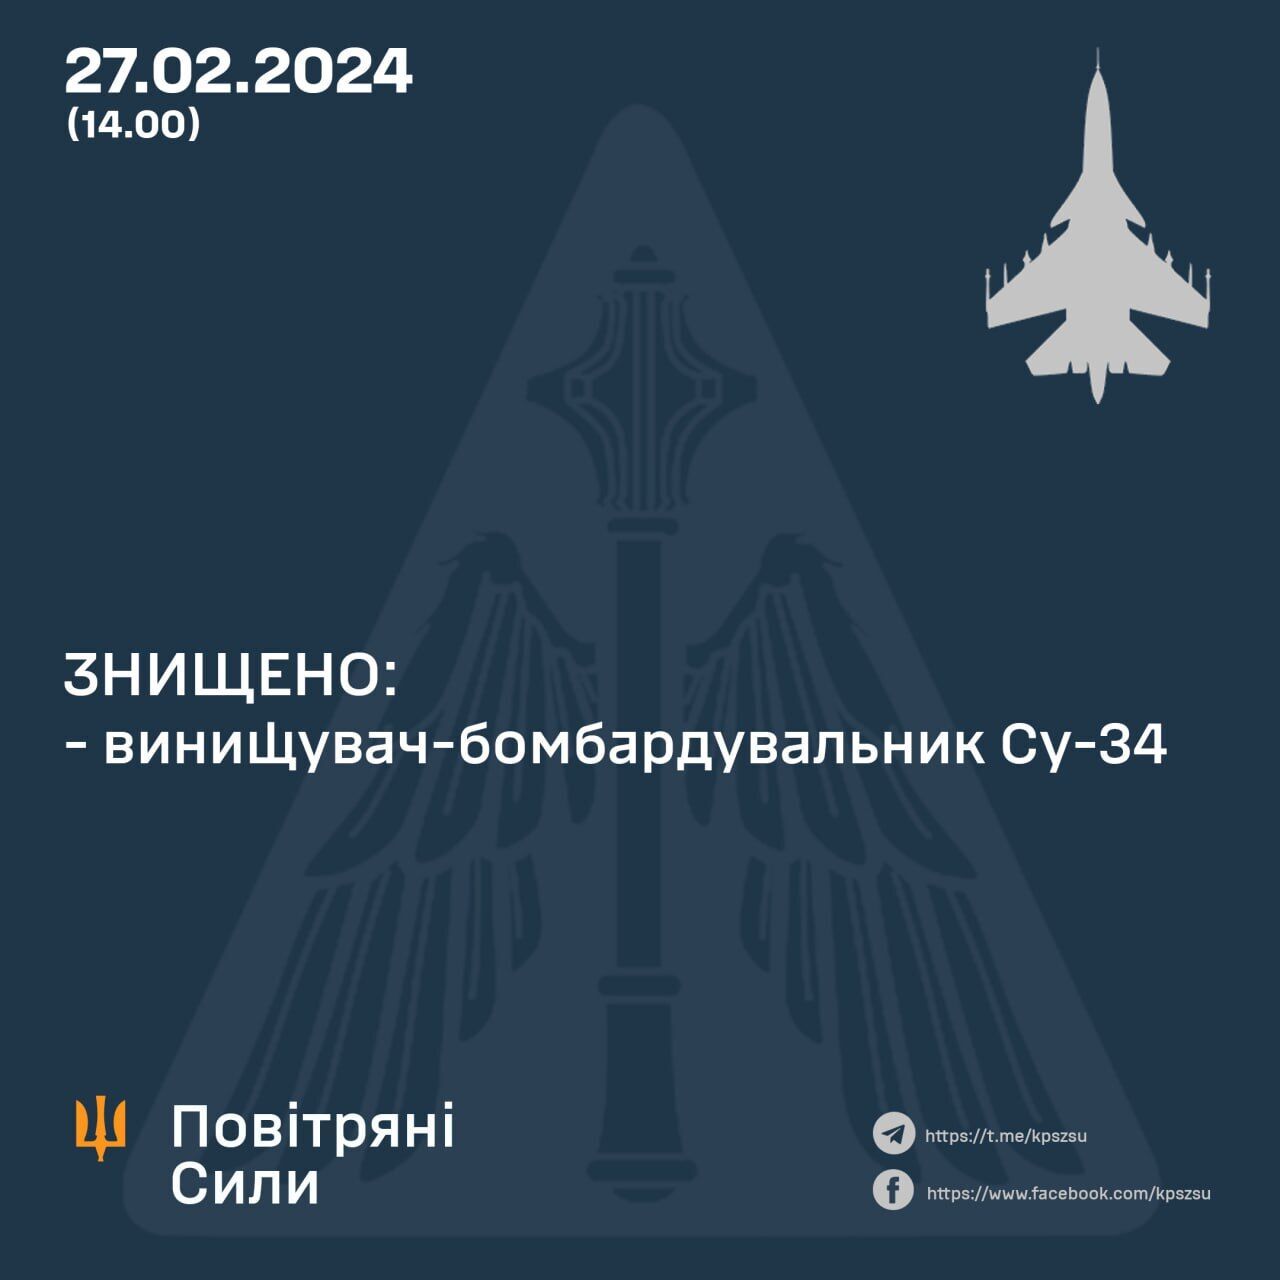 Второй за день: Воздушные силы ВСУ сбили еще один российский Су-34. Фото